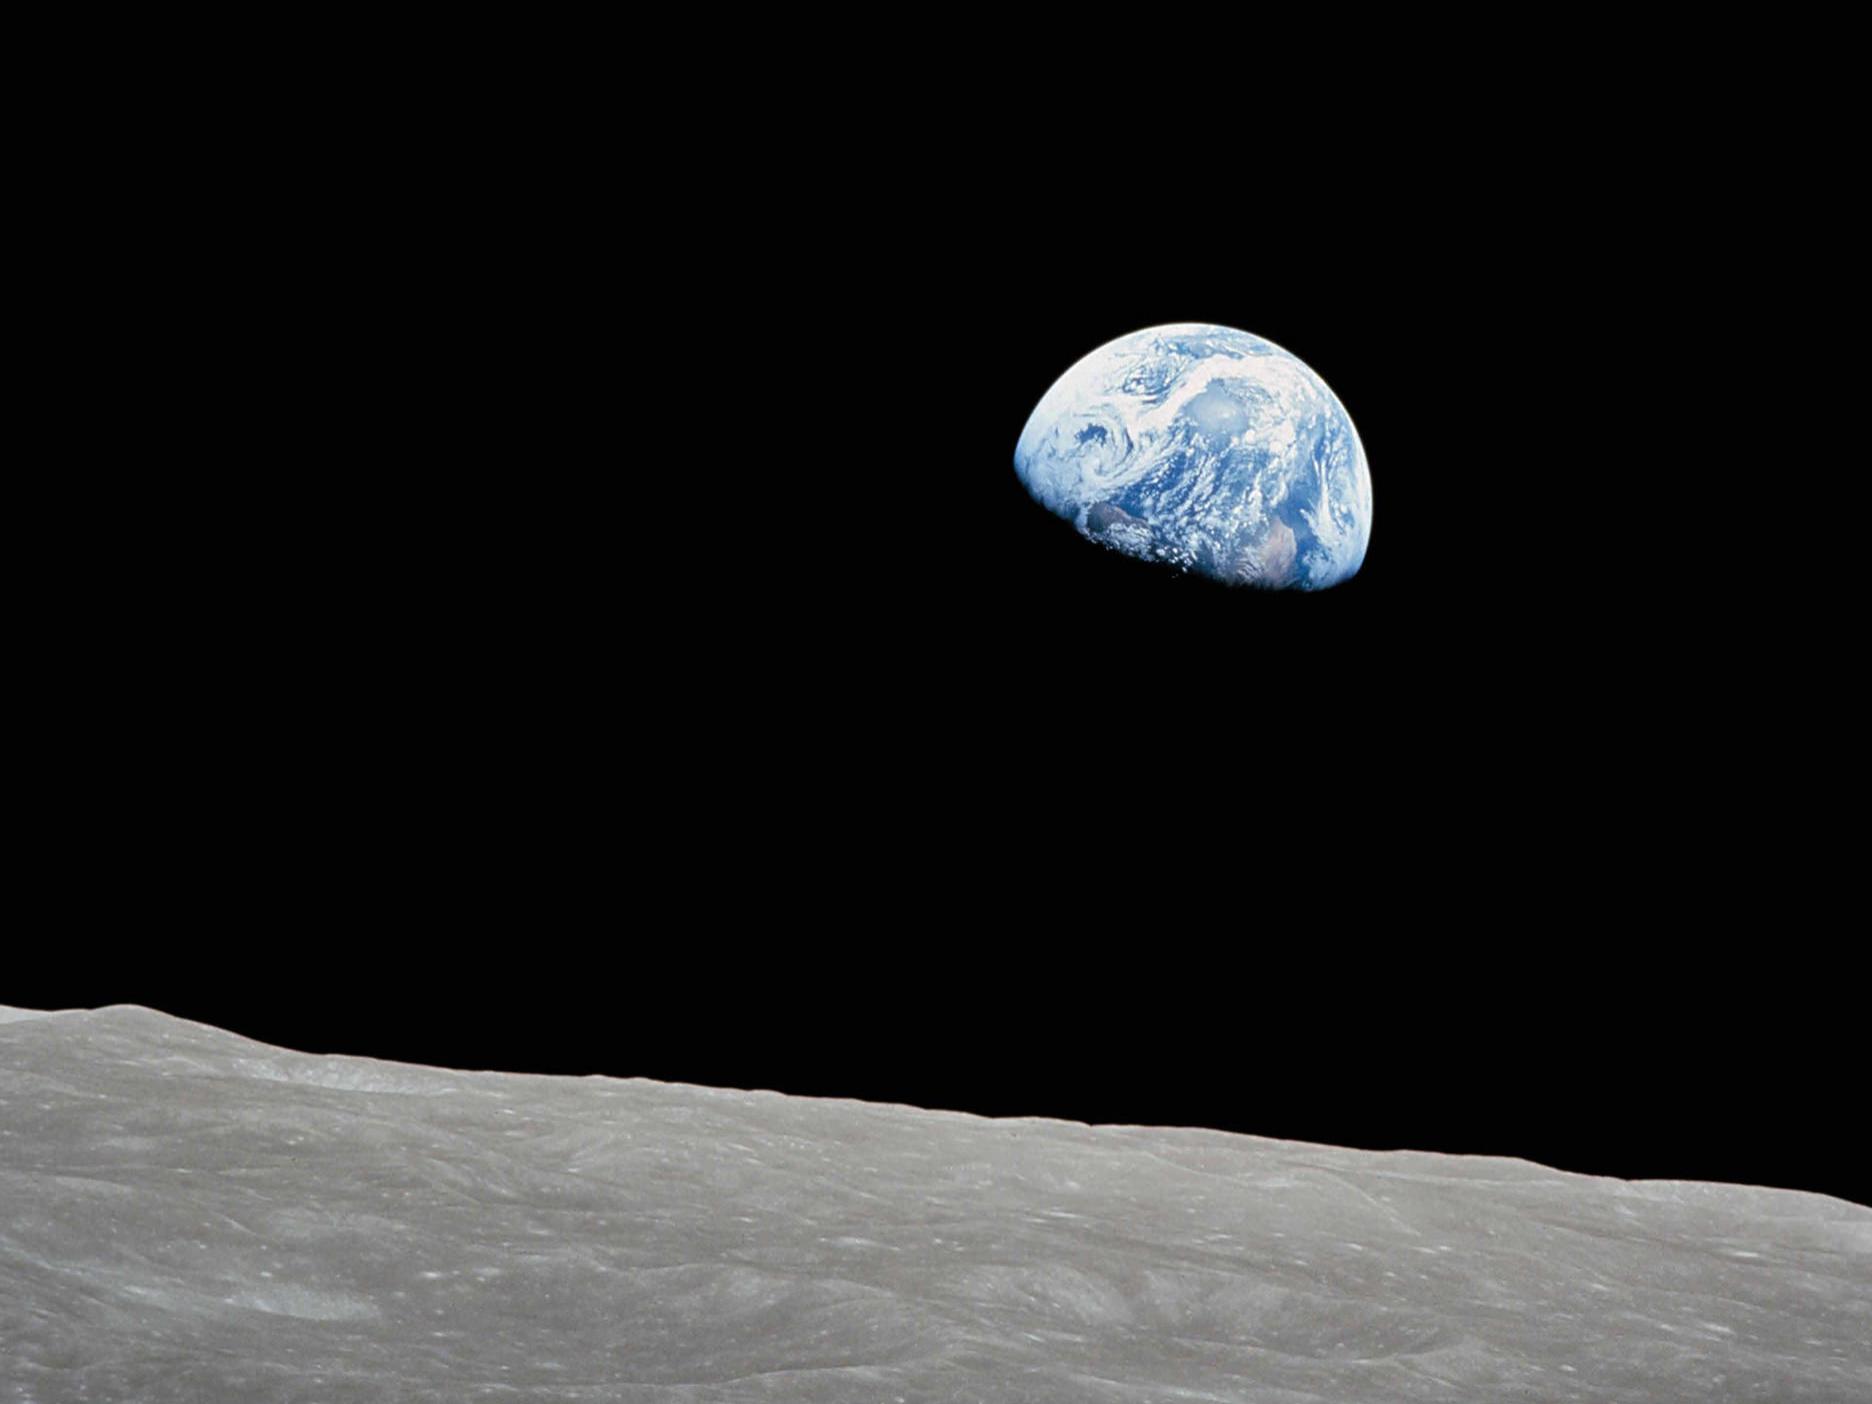 A perspetiva de pisar a superfície da lua e olhar para o planeta Terra.